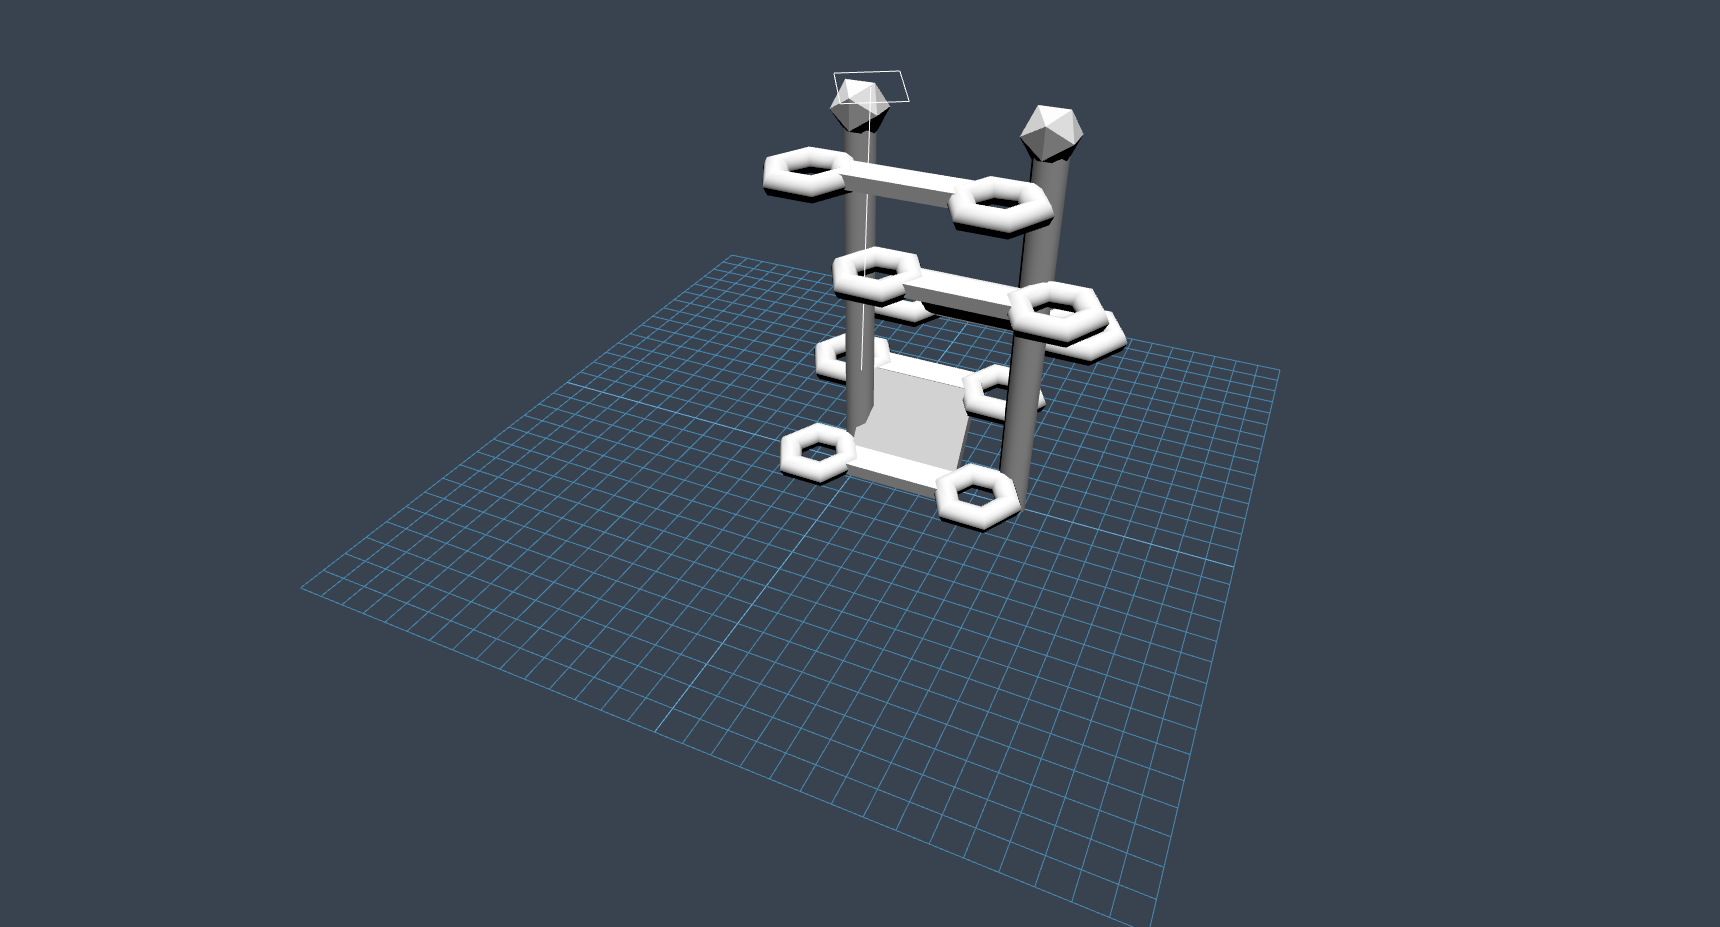 arbre a chat - Just1 द्वारा निर्मित 3D के साथ